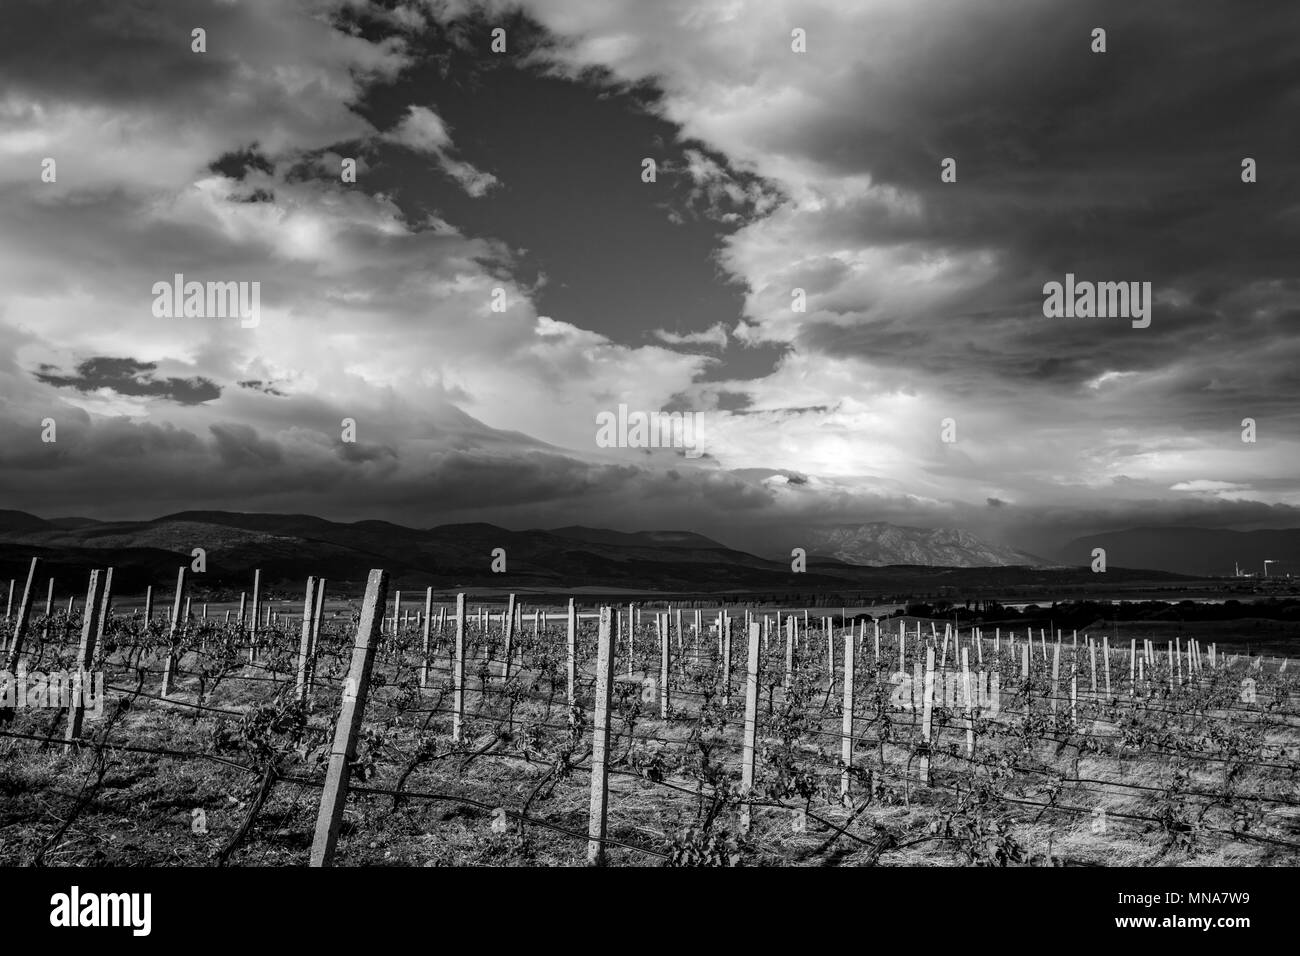 Magnifique paysage de vignoble en Bulgarie centrale avec des nuages dans le ciel, et en noir et blanc Banque D'Images